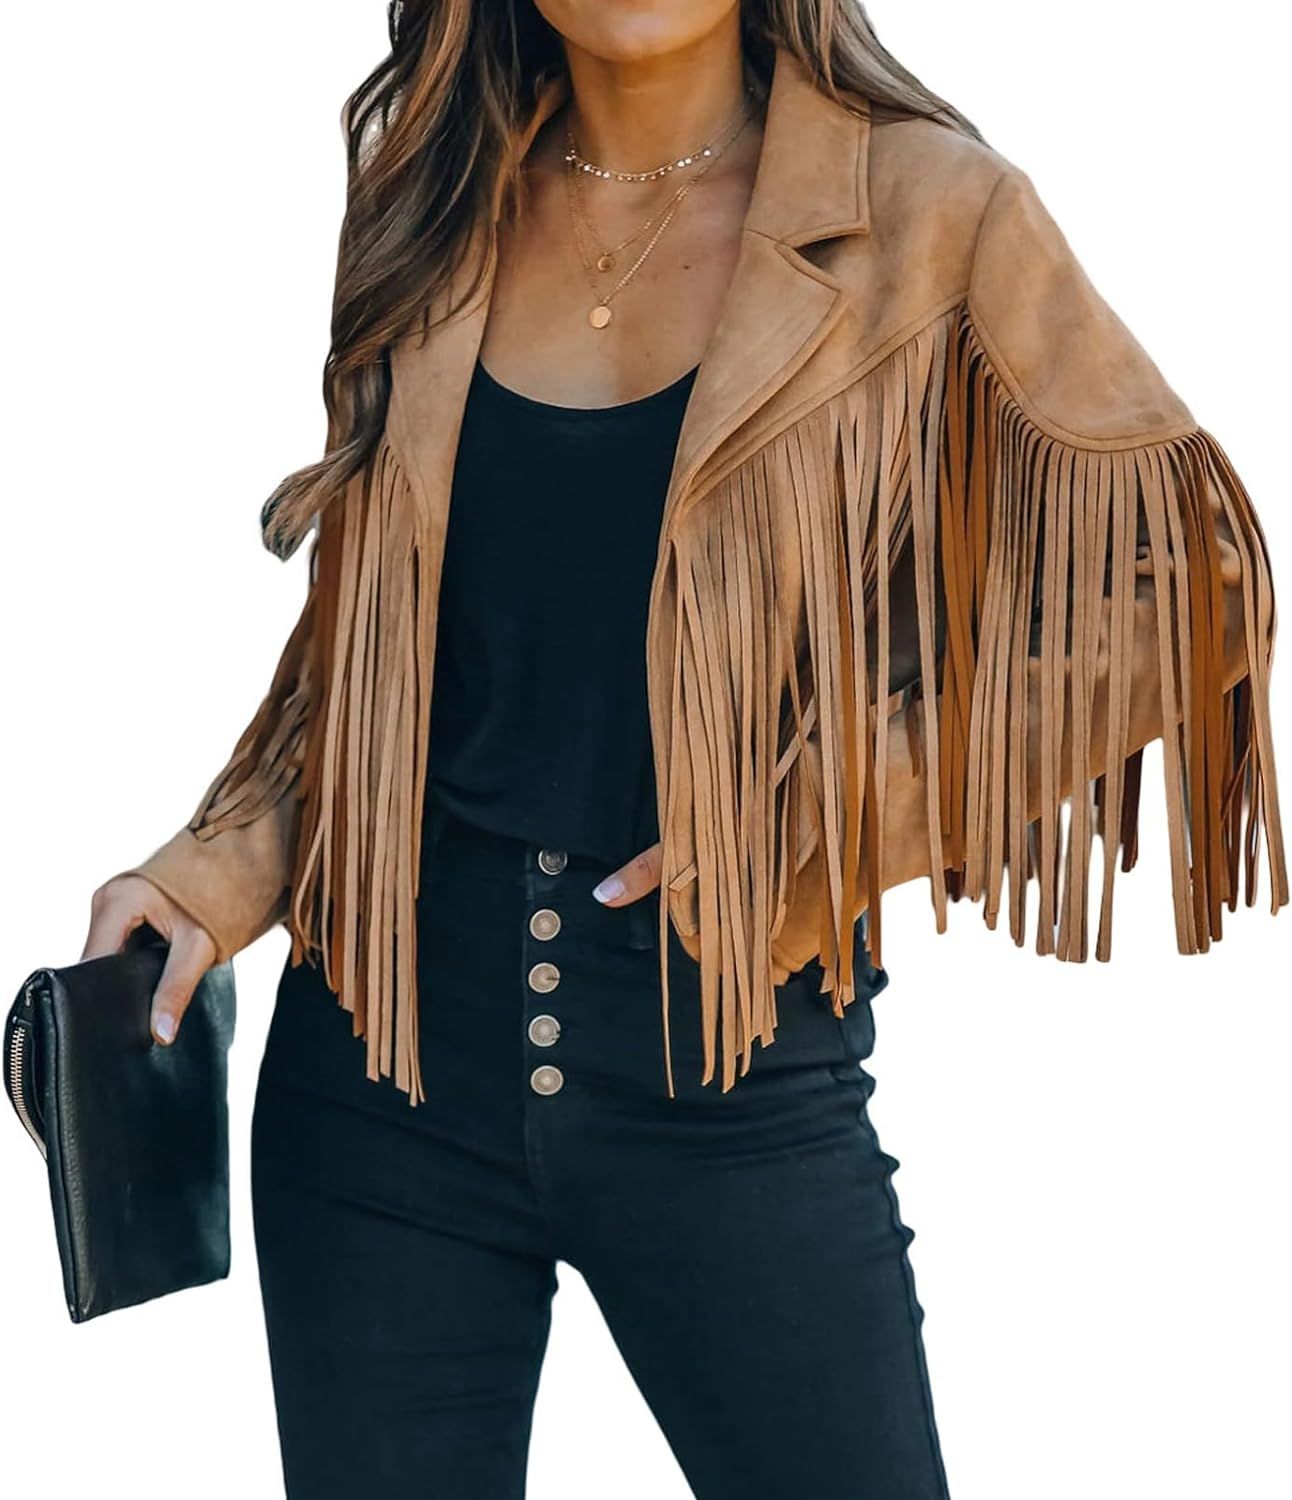 CHARTOU Casual Faux Leather Jacket Women Motorcycle Jacket Fringe Cropped Jacket Utility Tassel S... | Amazon (US)